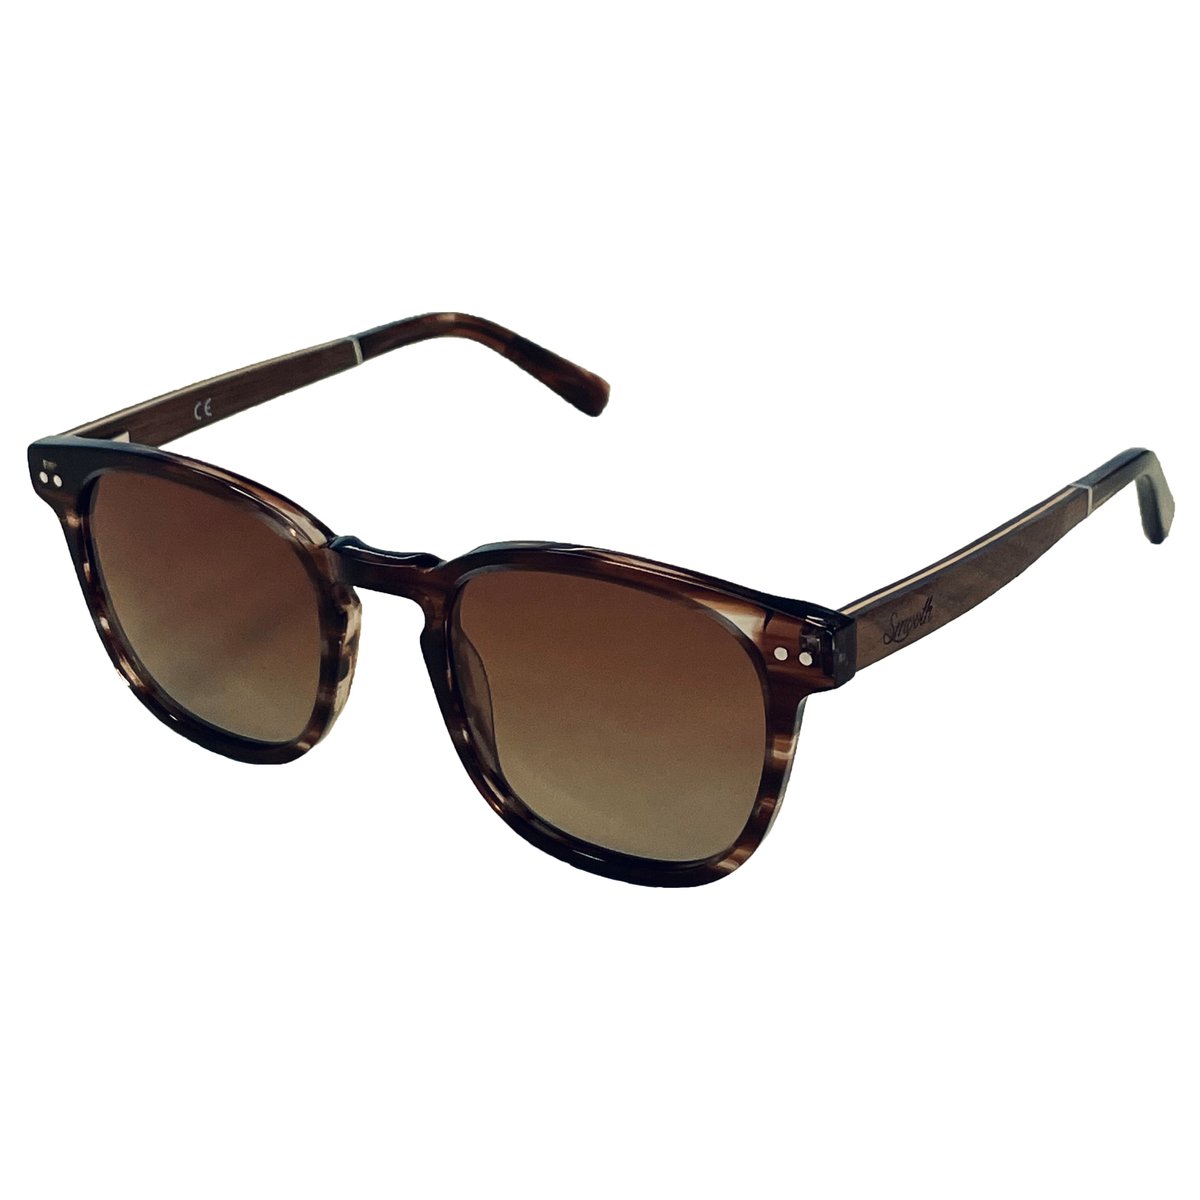 SMOOTH - houten zonnebril - unisex model - UV400 gepolariseerde glazen van de hoogste kwaliteit - MIGO TEA